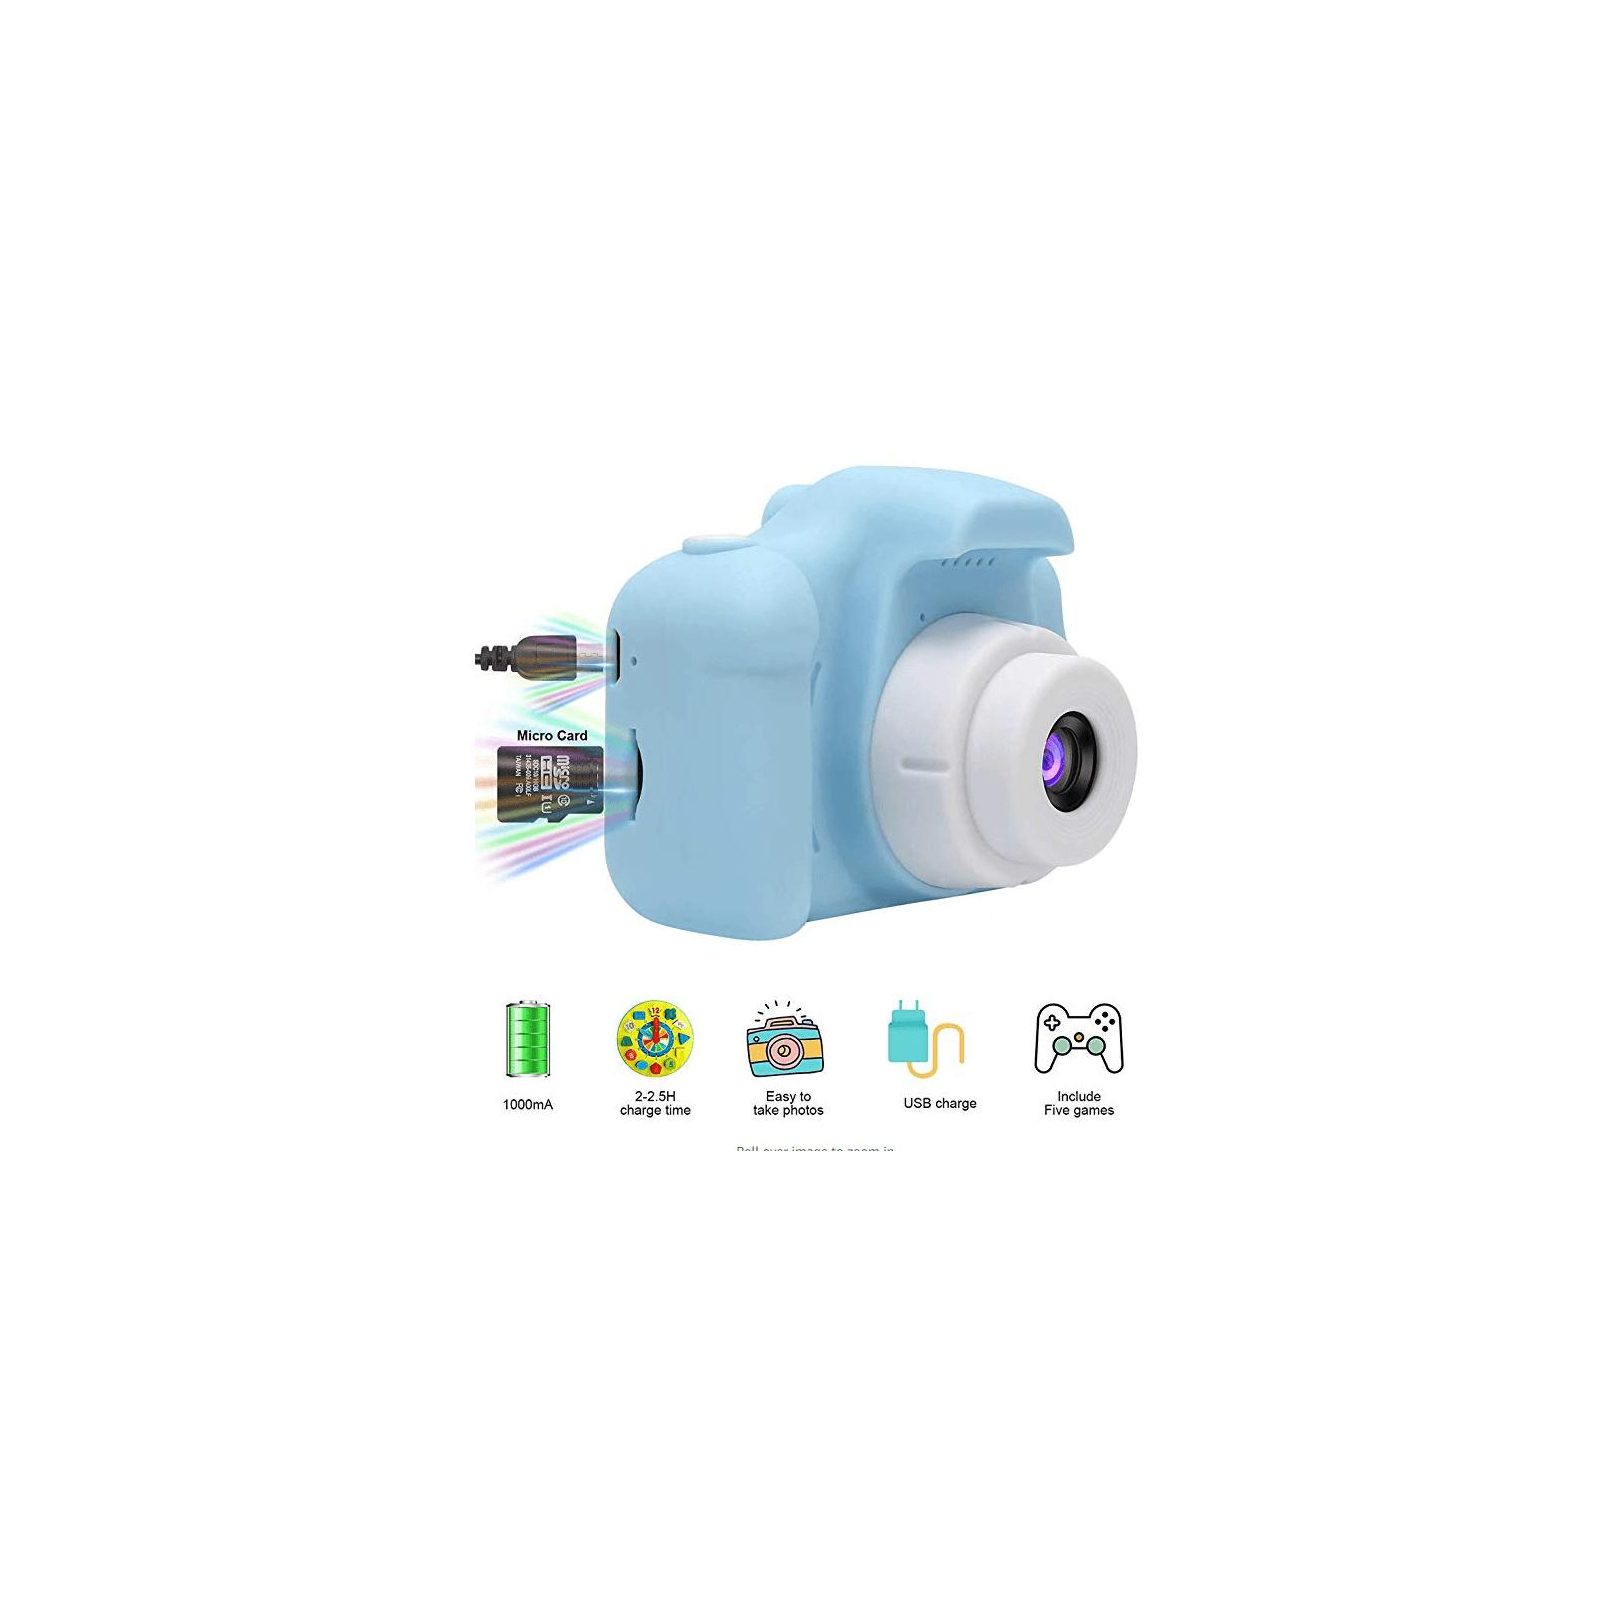 Интерактивная игрушка XoKo Цифровой детский фотоаппарат розовый (KVR-001-PN) изображение 5